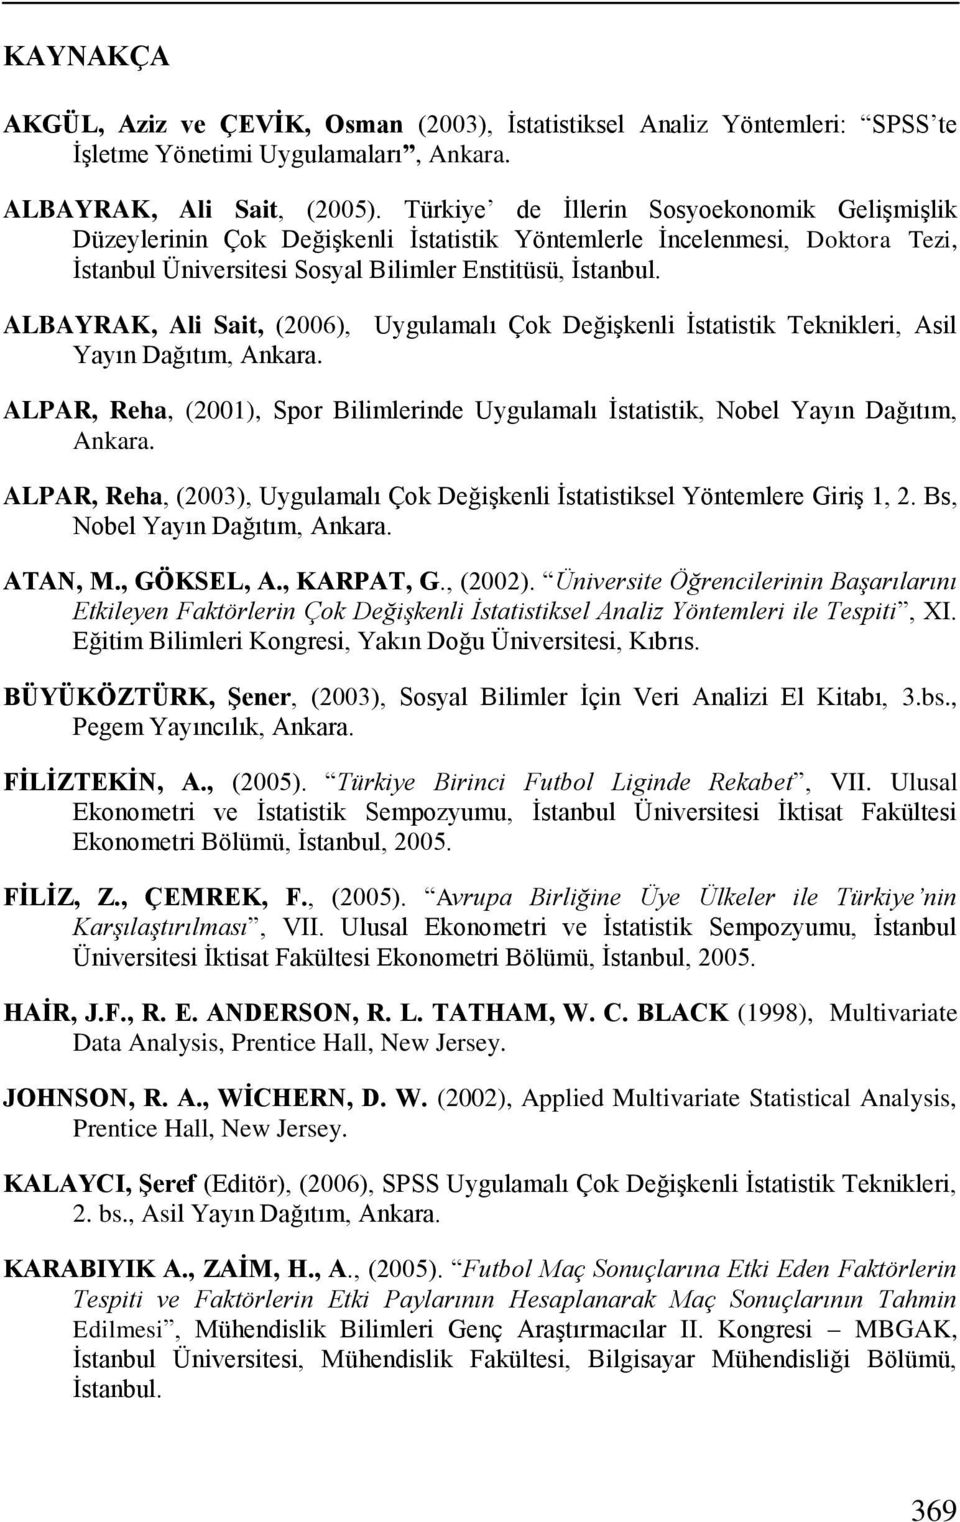 ALBAYRAK, Ali Sait, (006), Uygulamalı Çok Değişkenli İstatistik Teknikleri, Asil Yayın Dağıtım, Ankara. ALPAR, Reha, (001), Spor Bilimlerinde Uygulamalı İstatistik, Nobel Yayın Dağıtım, Ankara.